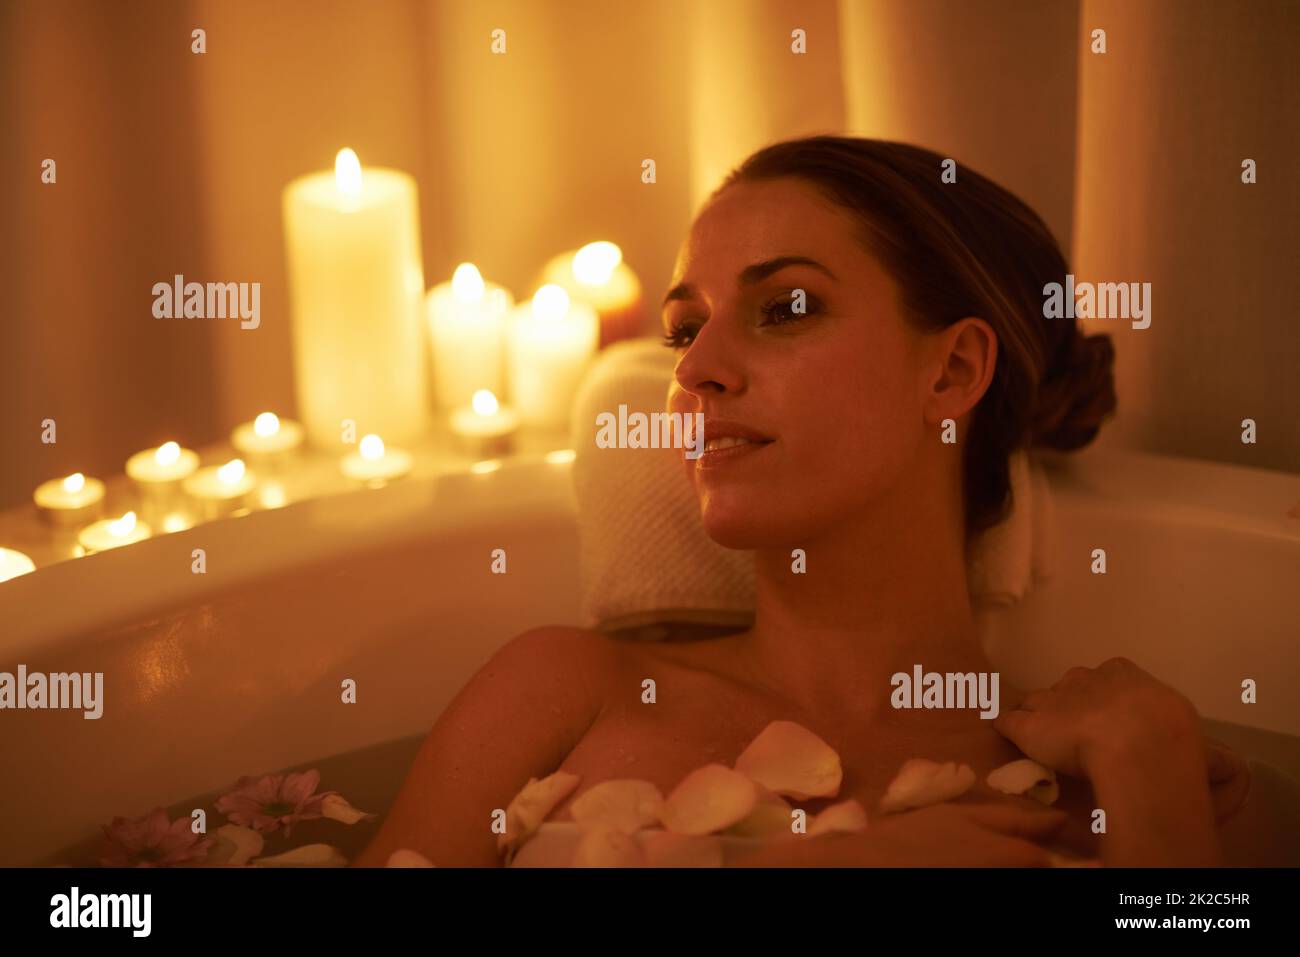 Beruhigt durch das Ambiente und ein heißes Bad. Eine kurze Aufnahme einer wunderschönen Frau, die sich in einem bei Kerzenschein beleuchteten Bad entspannt. Stockfoto